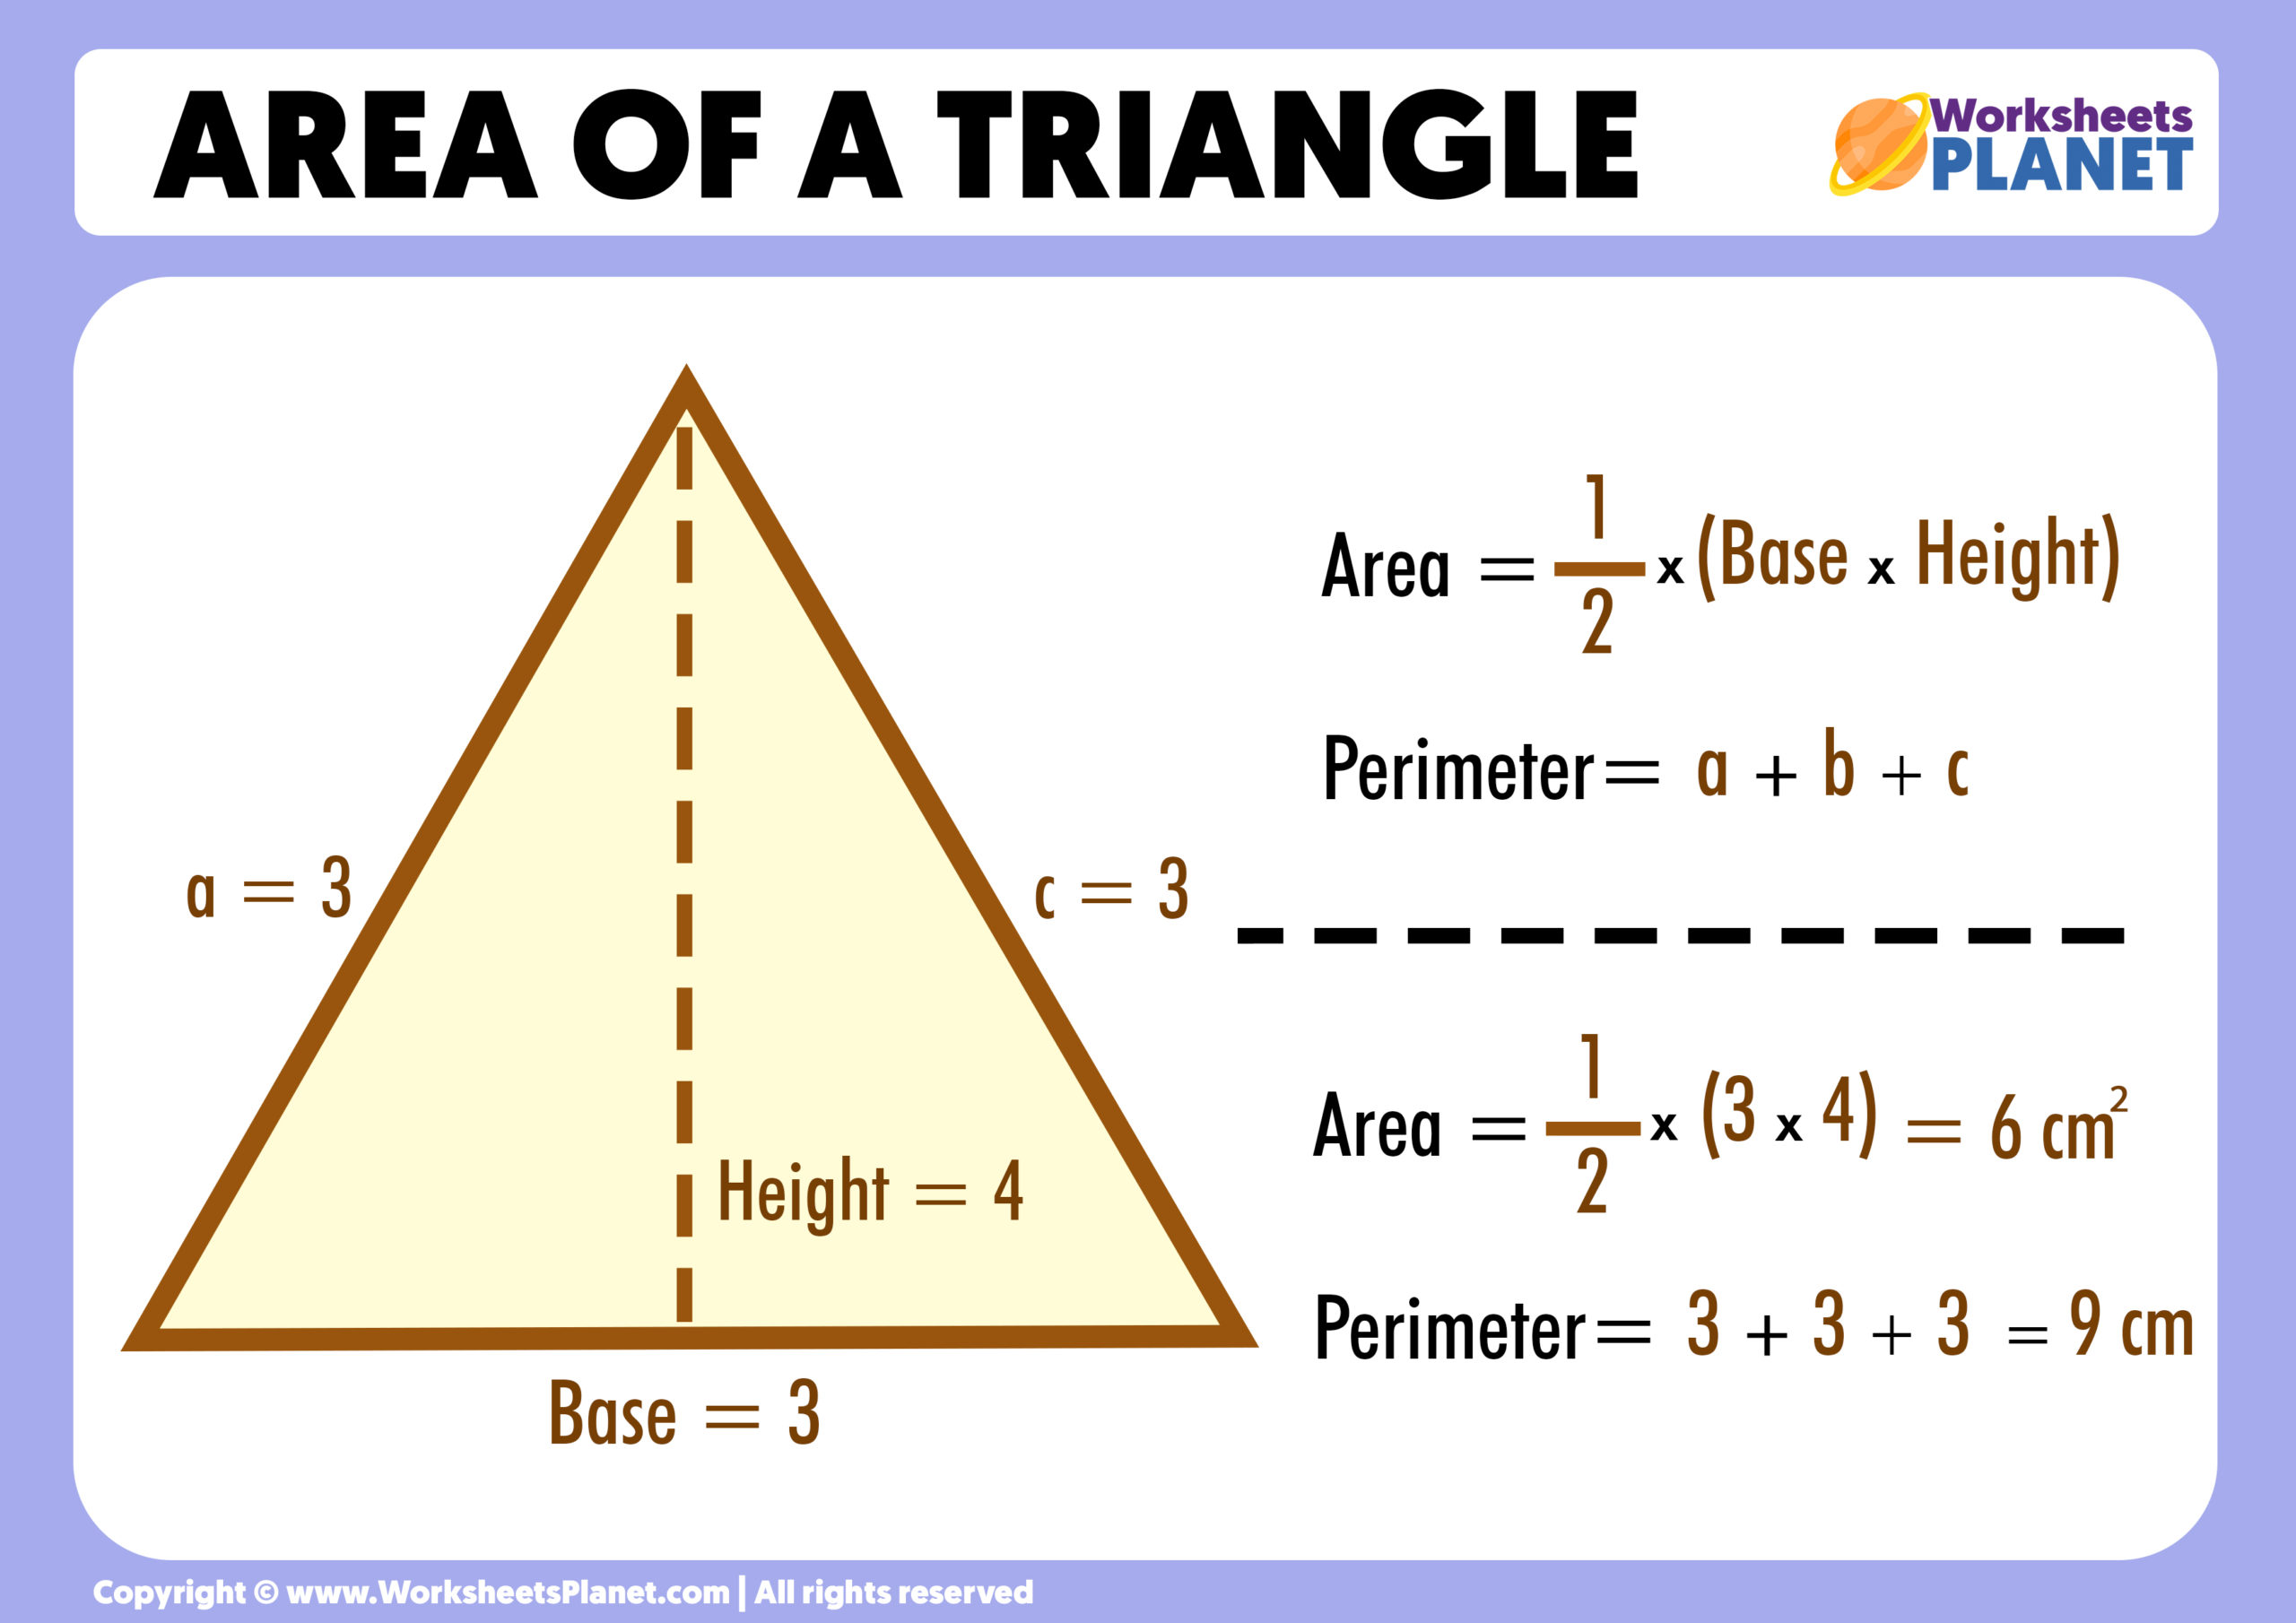 area-of-a-triangle-formula-example